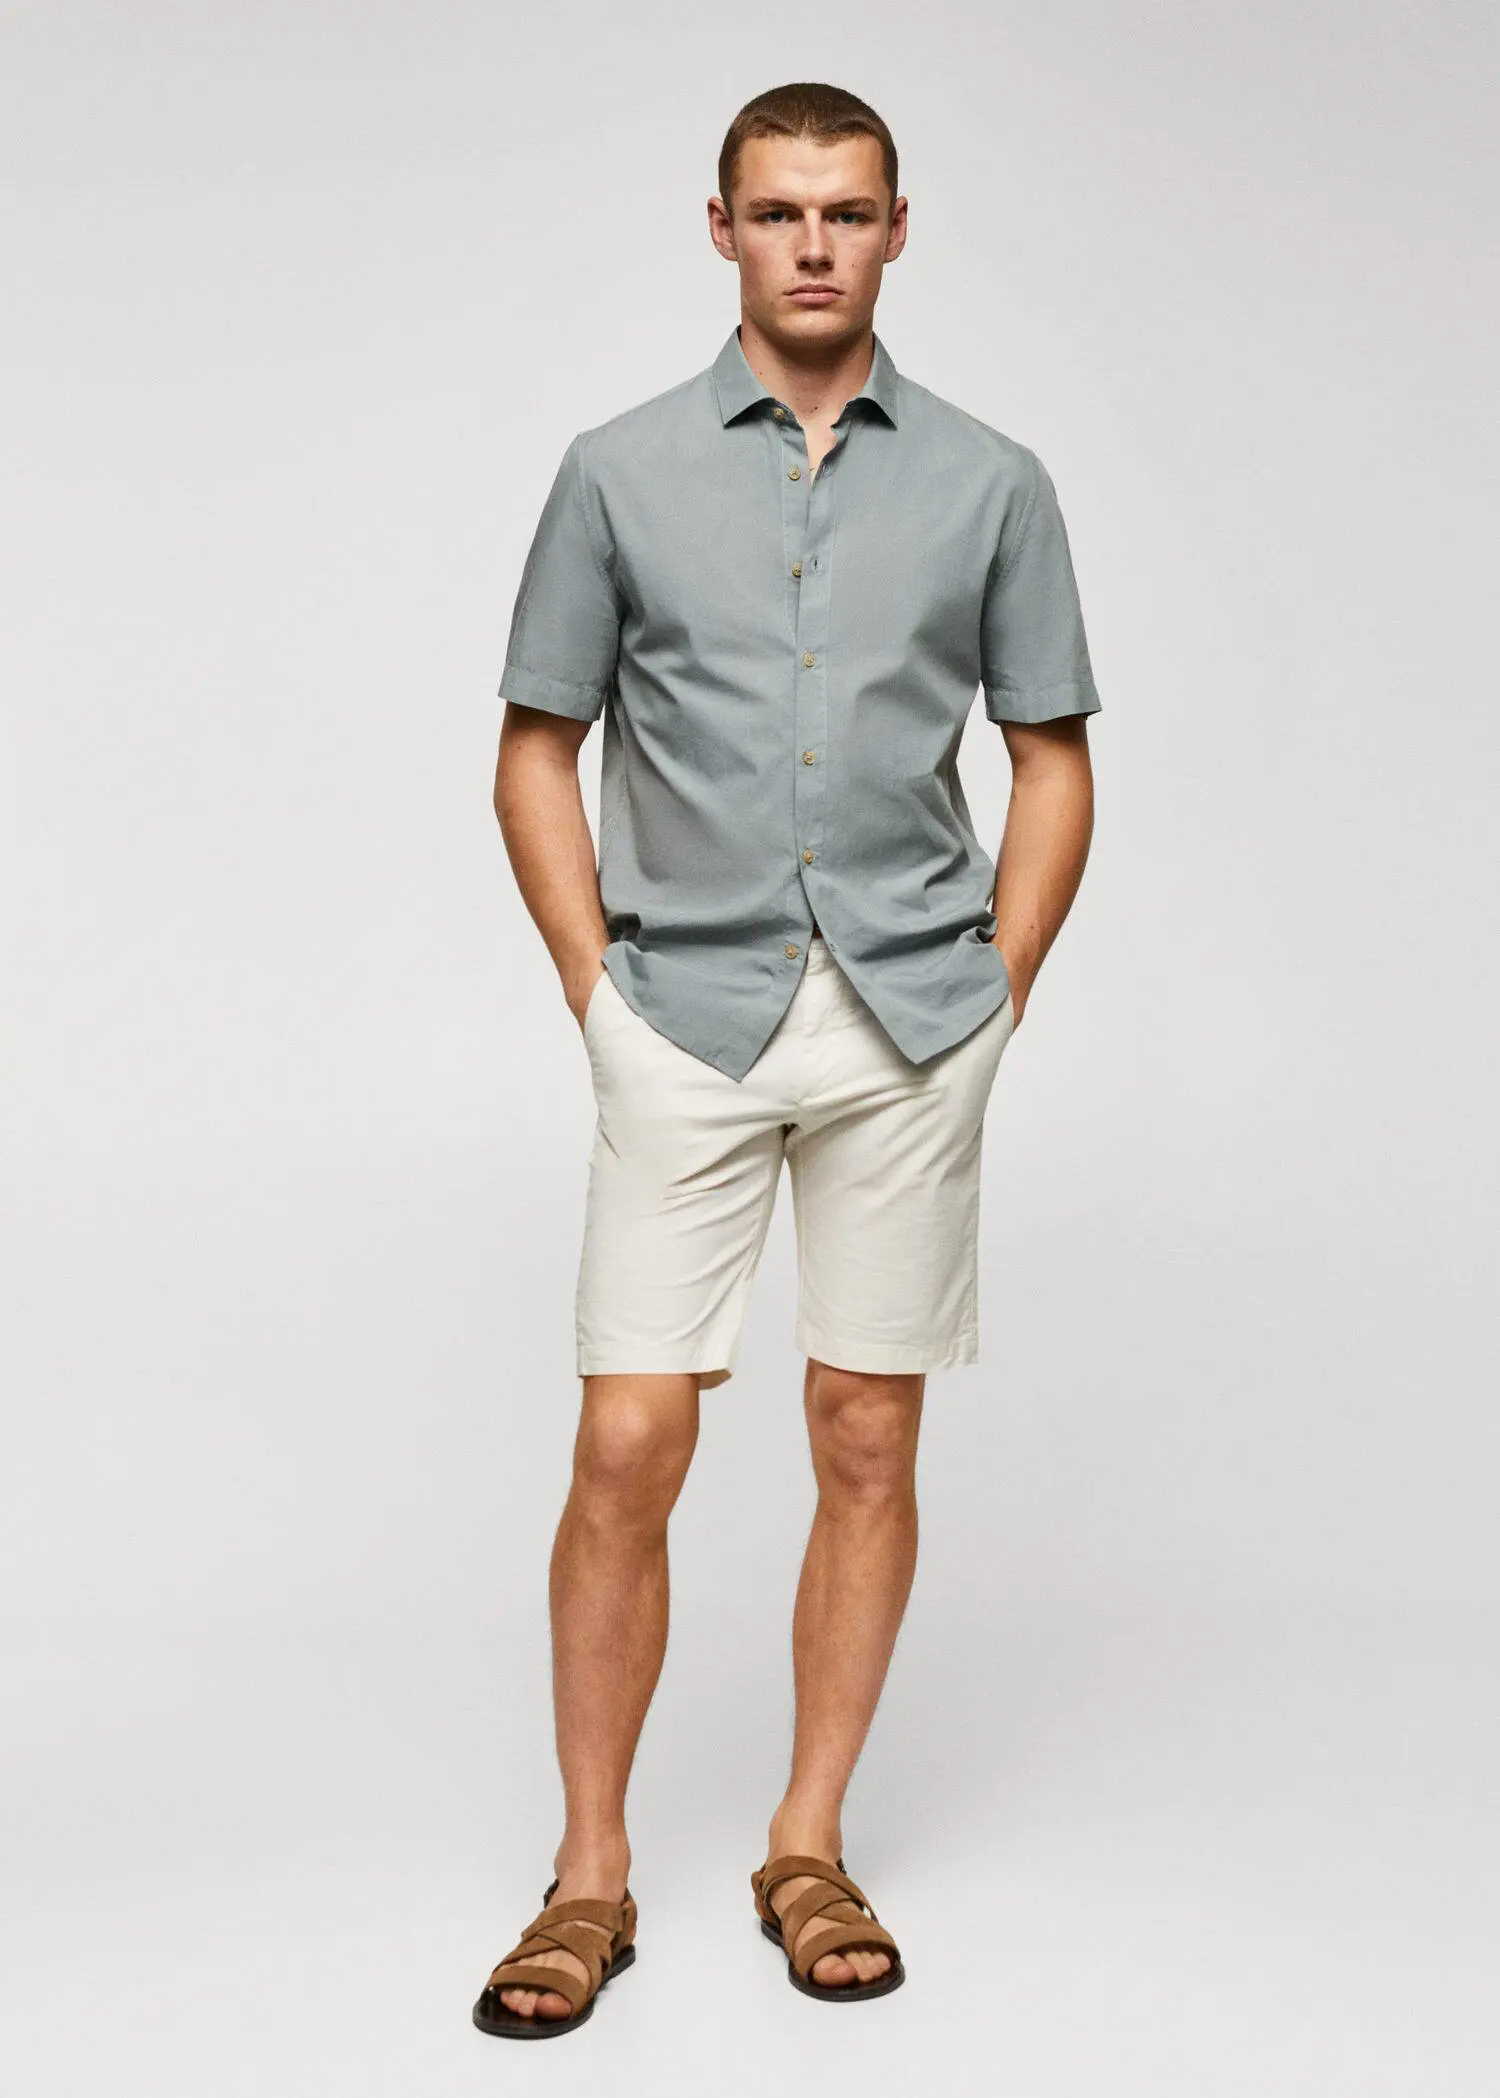 Mango Lightweight cotton shirt . a man in shorts and a button up shirt. 